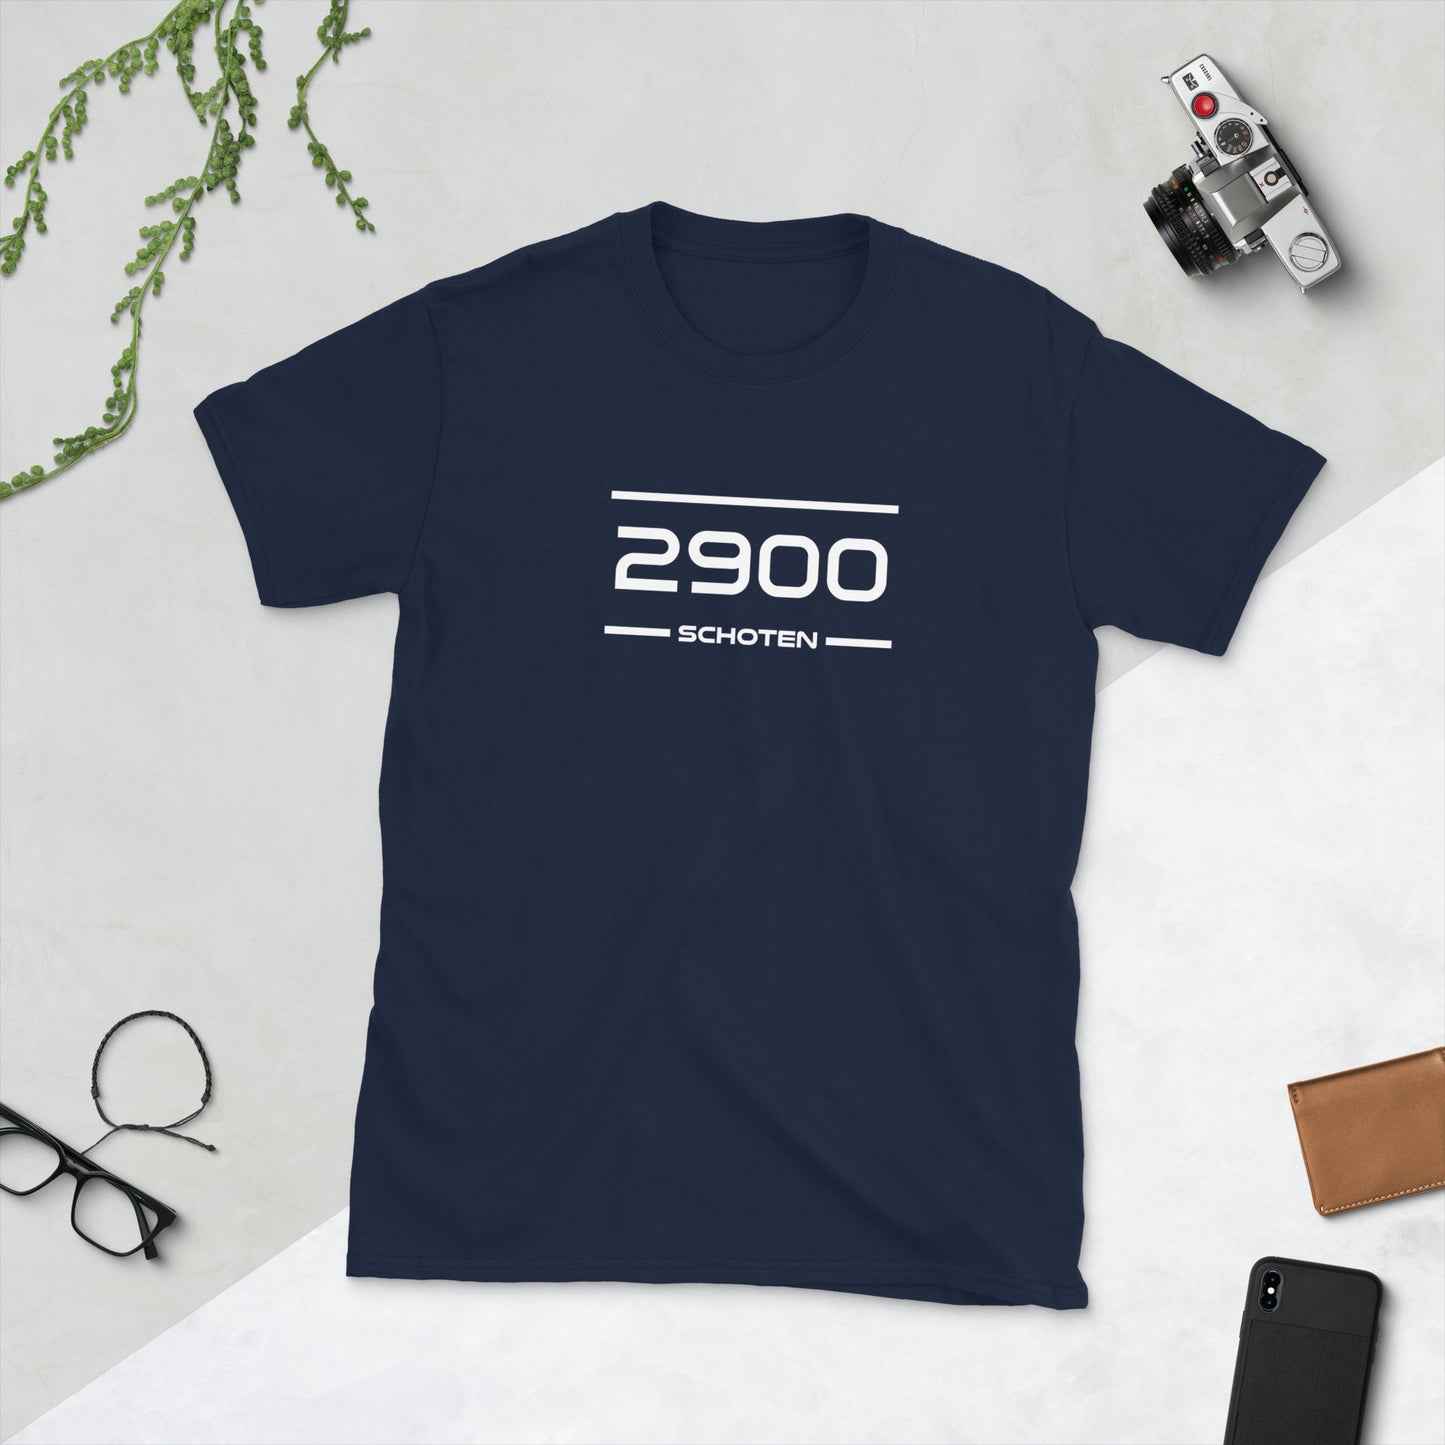 Tshirt - 2900 - Schoten